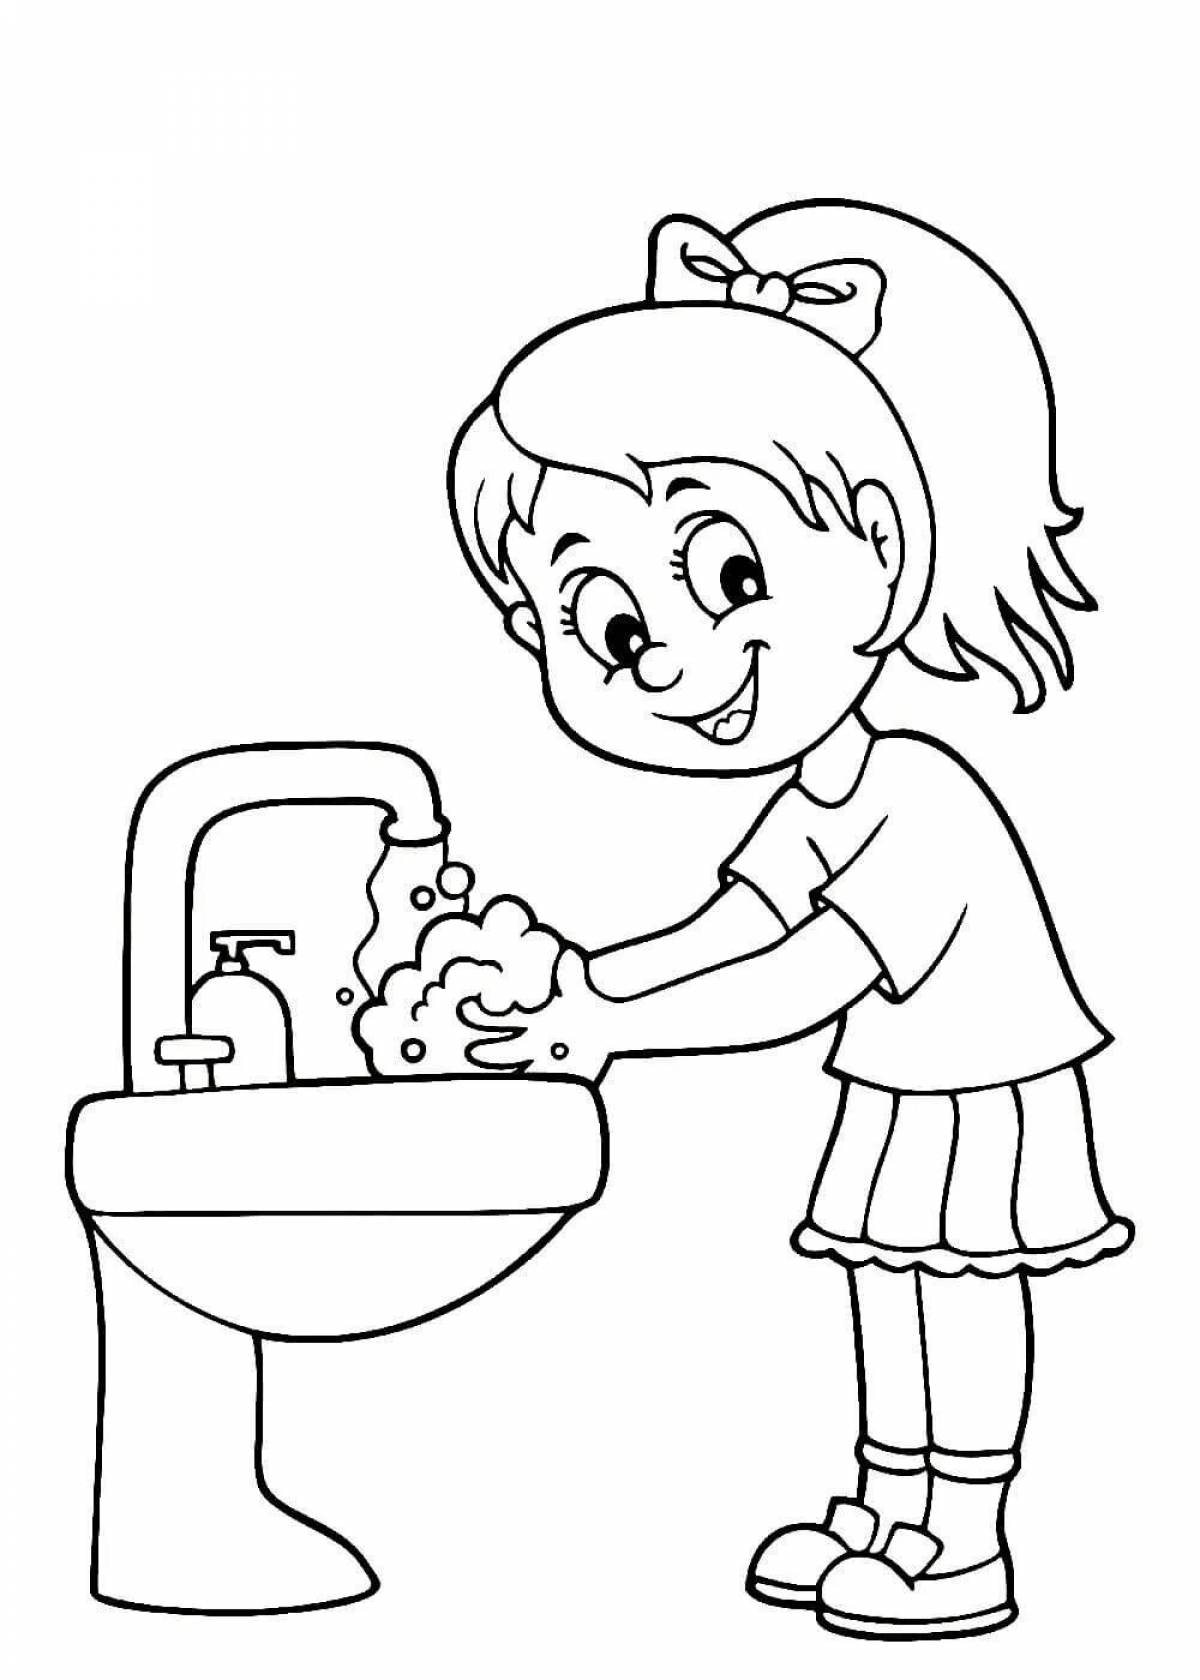 Гигиена - картинки для детей